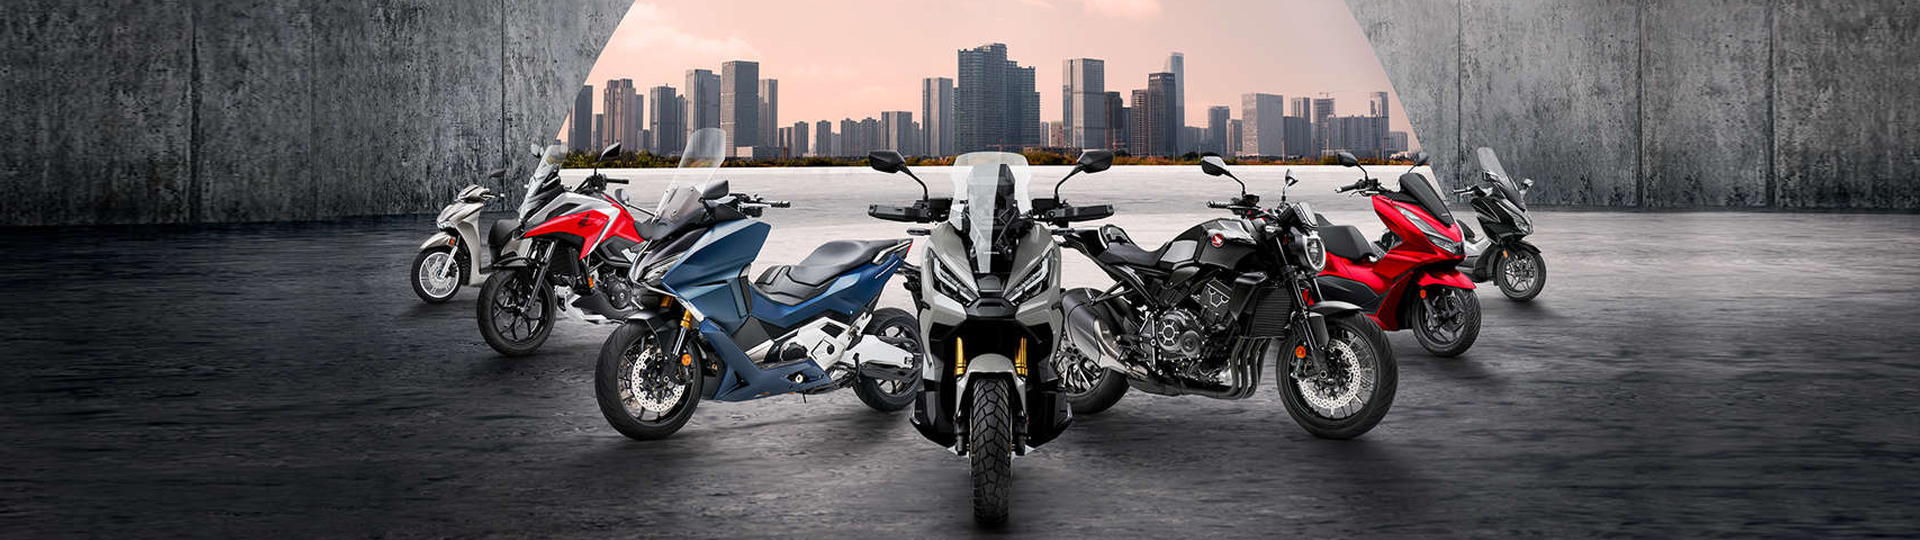 Nouveauts motos et scooters Honda 2021